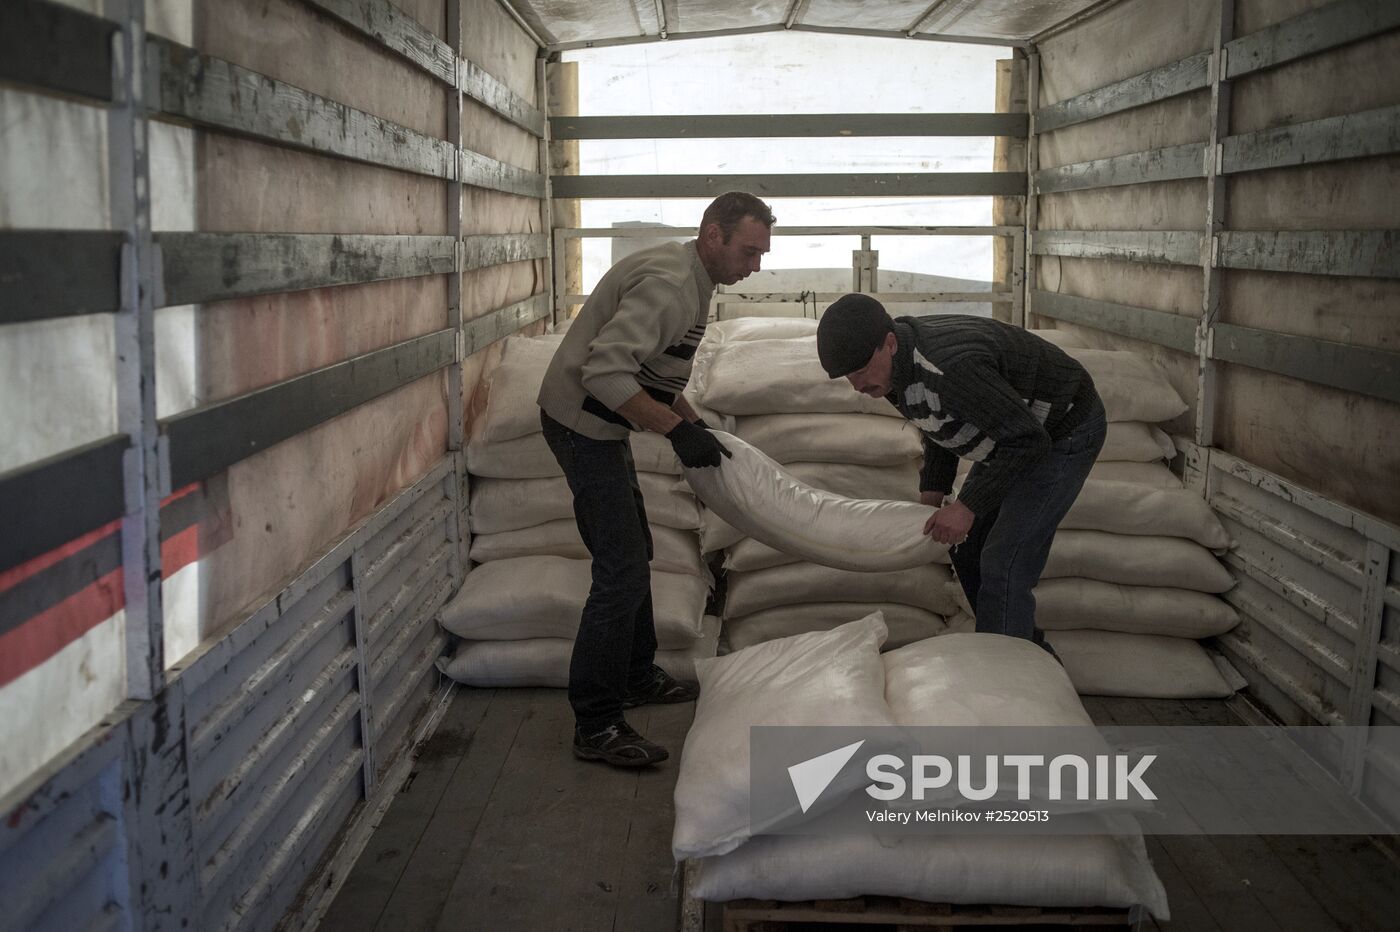 Russian humanitarian aid reaches Lugansk